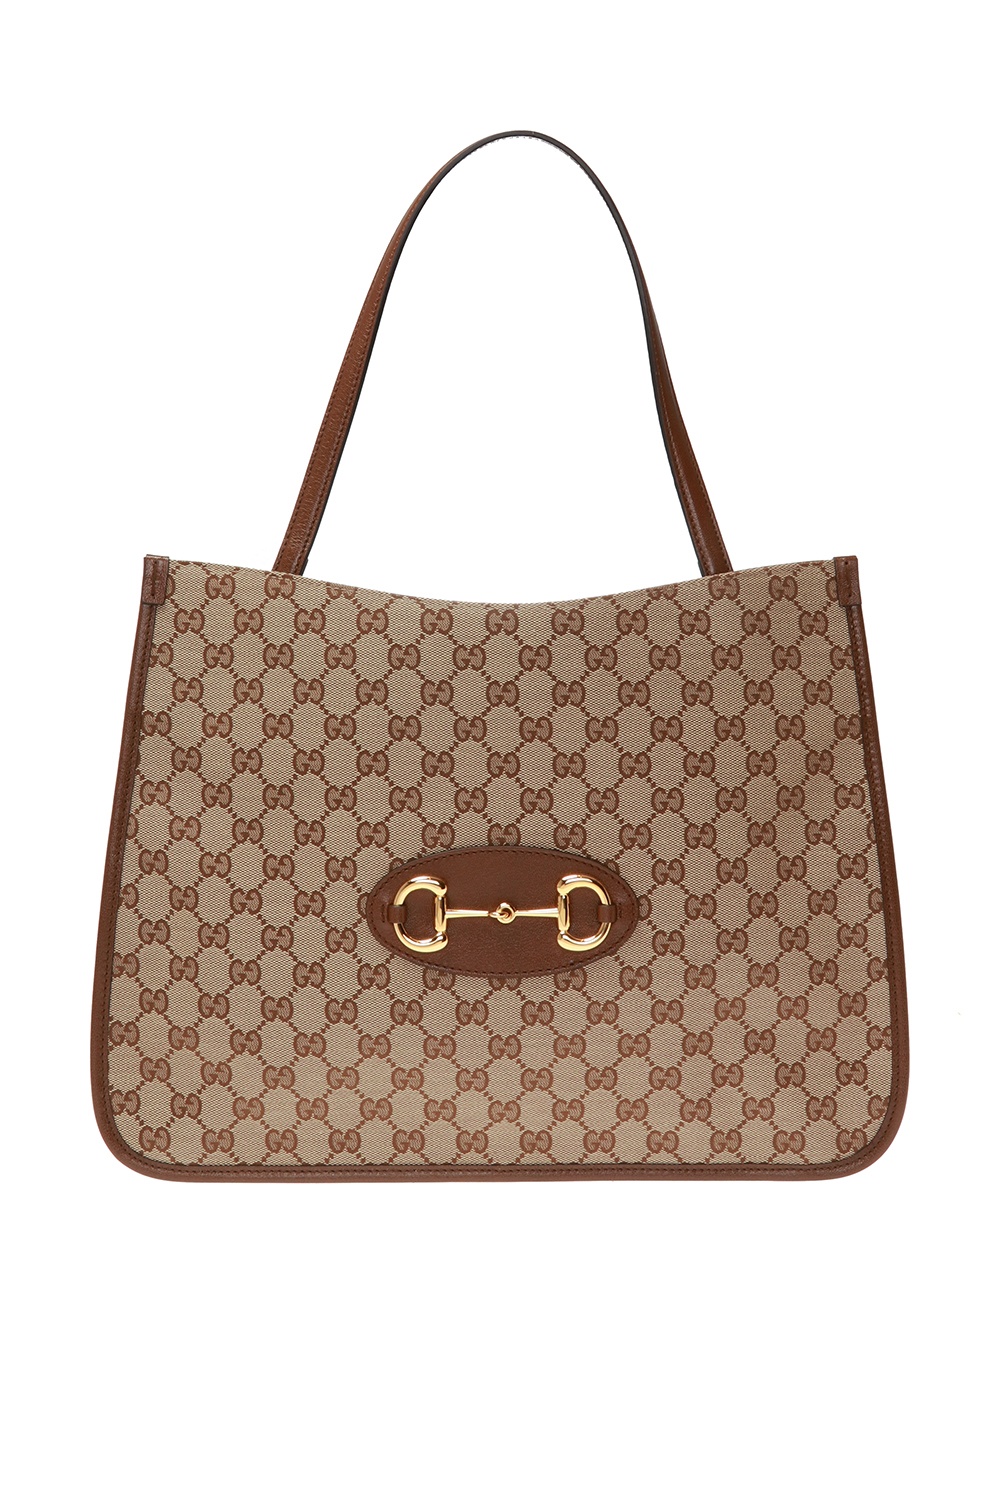 Gucci '1955 Horsebit' tote bag, Women's Bags